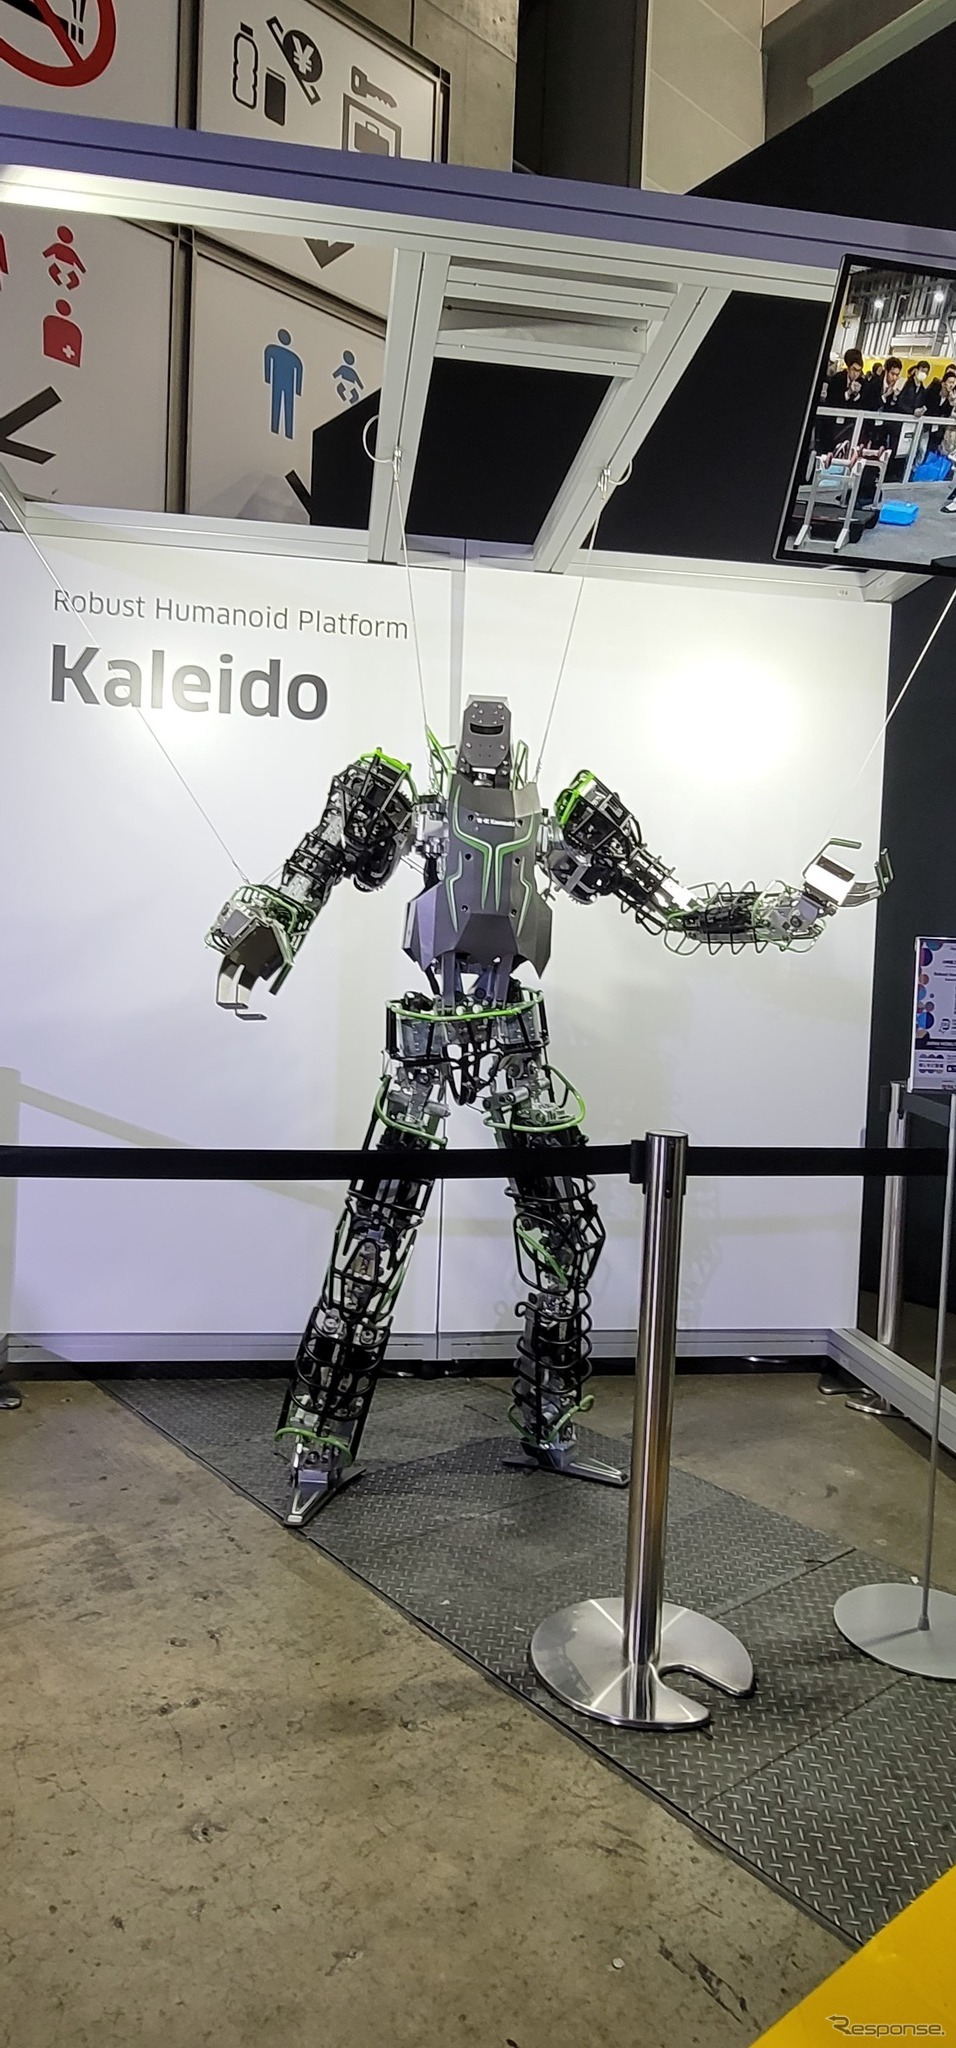 川崎重工業の2足歩行ヒューマノイドロボット『Robust Humanoid Platform Kaleido』。実用化が楽しみだ。《写真撮影 根岸智幸》